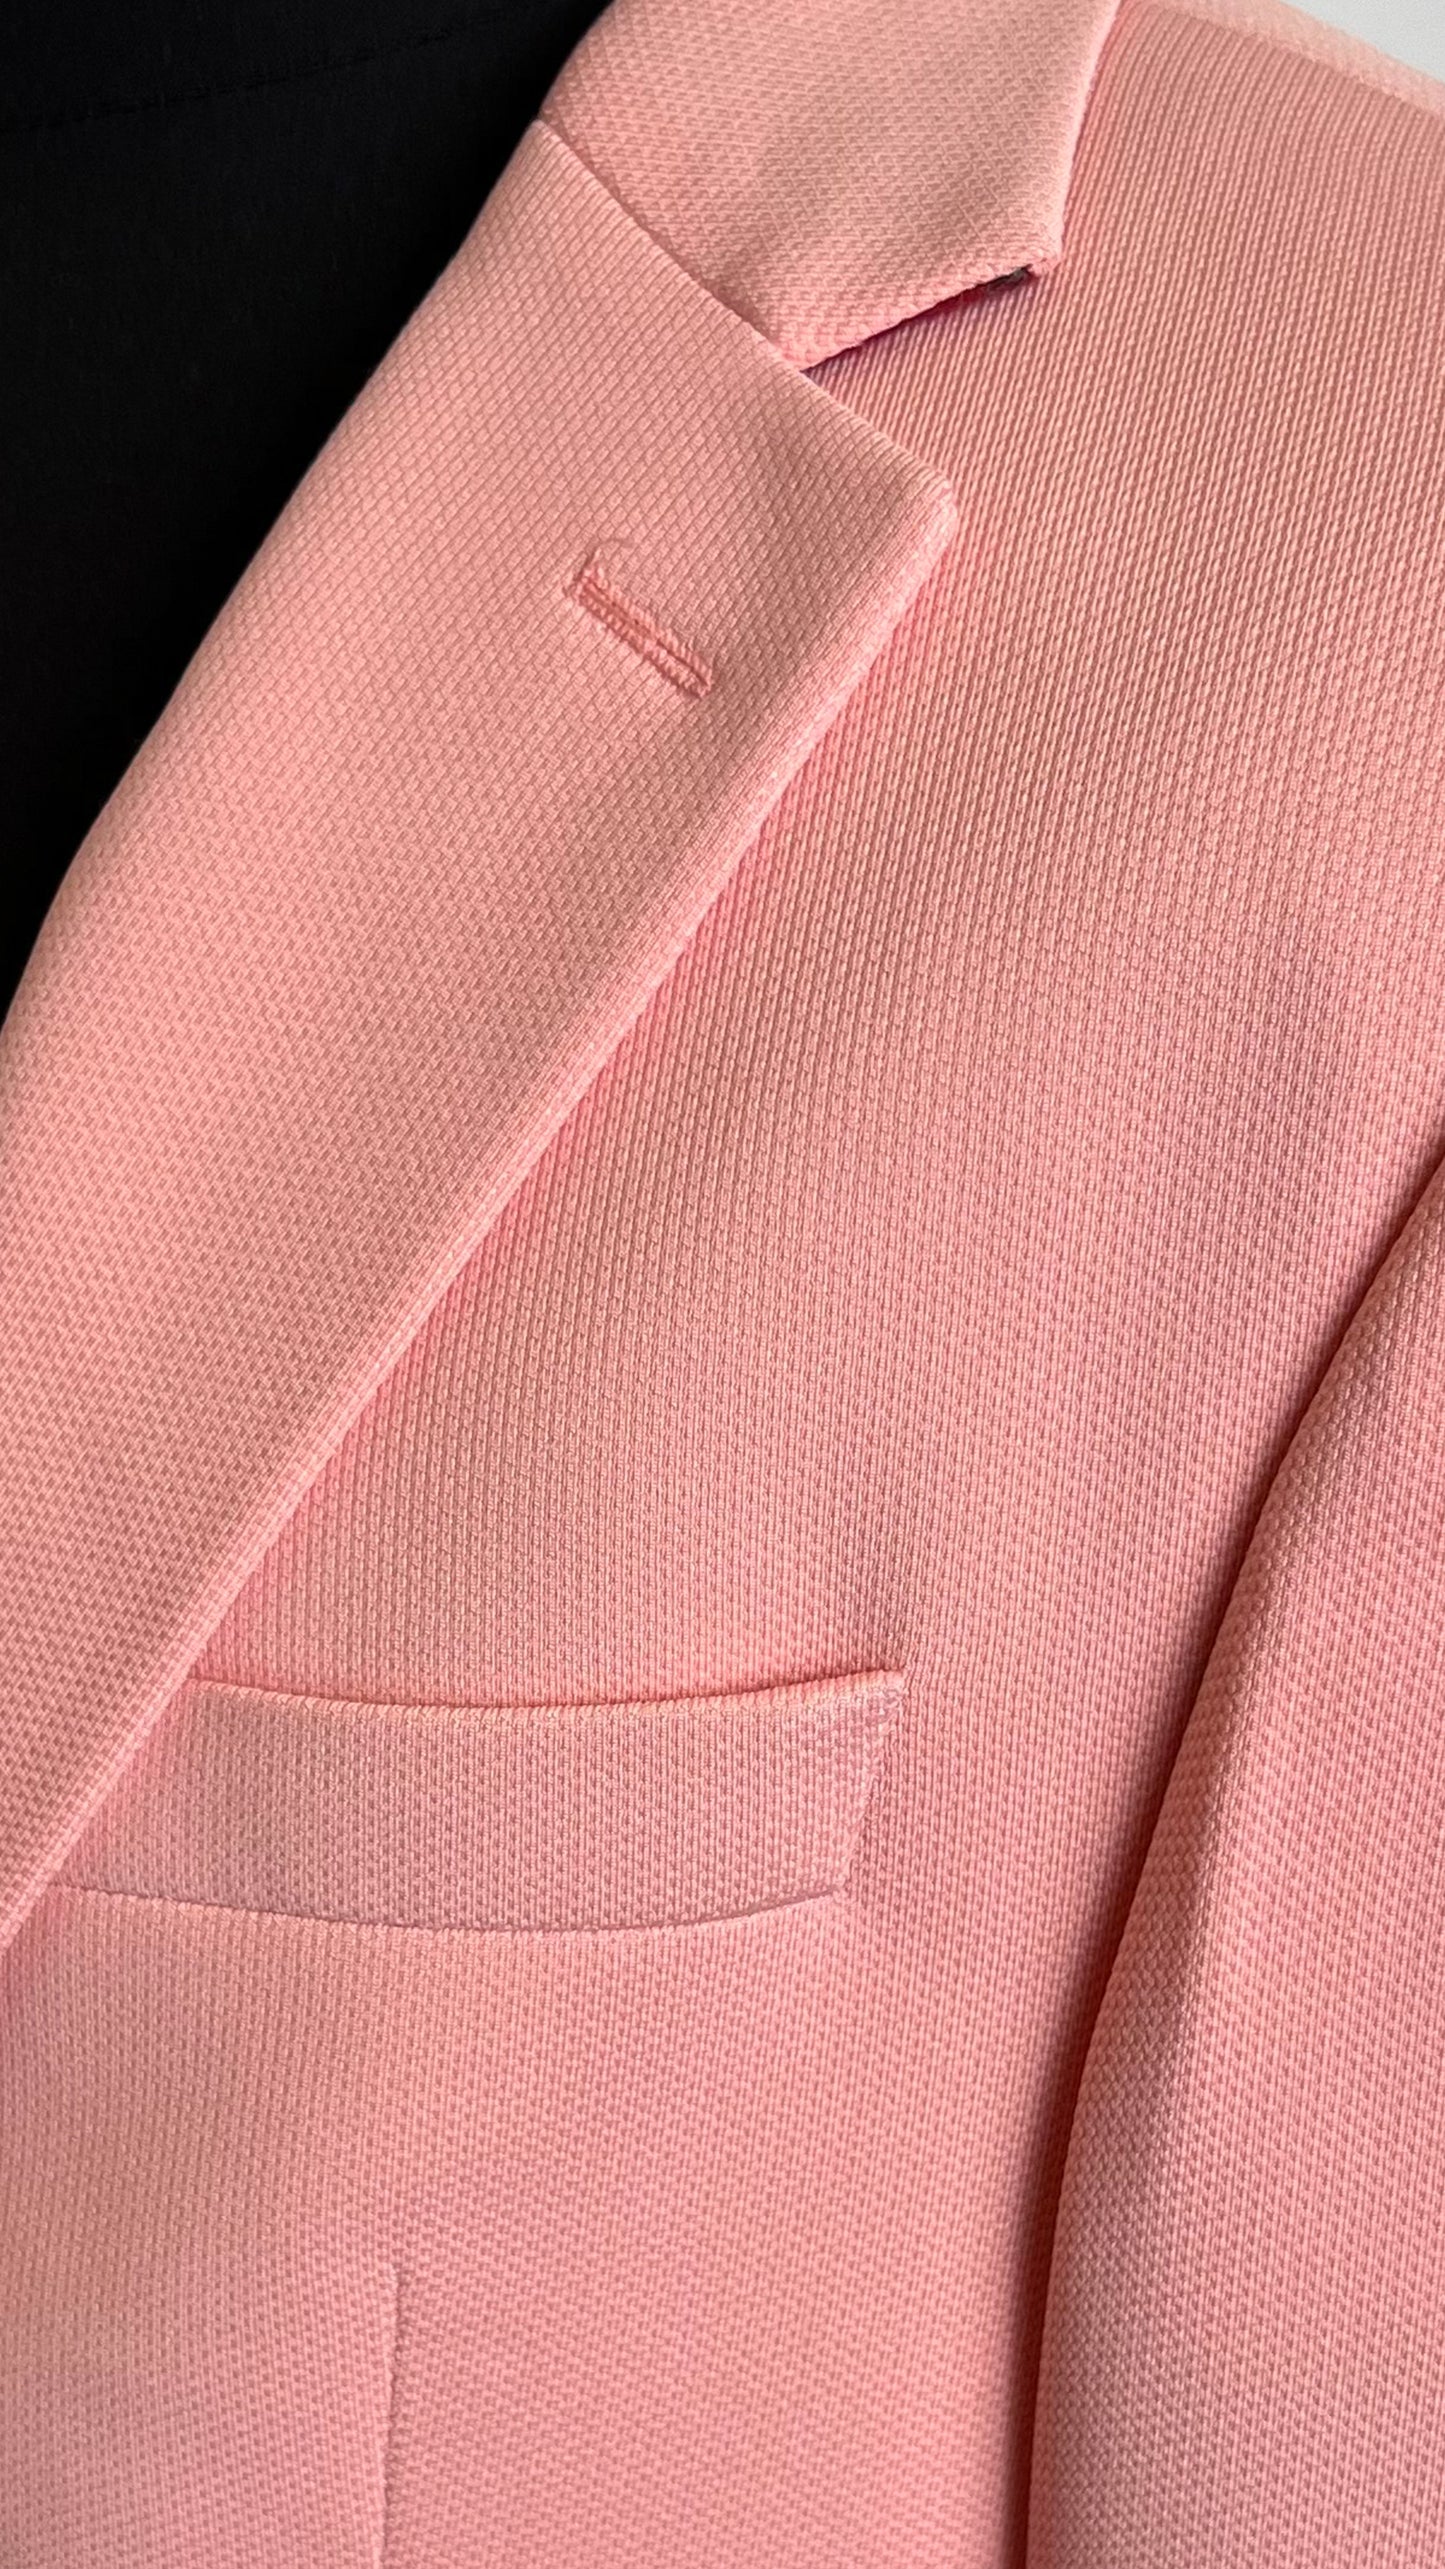 Vercini Rosé Elegance Blazer